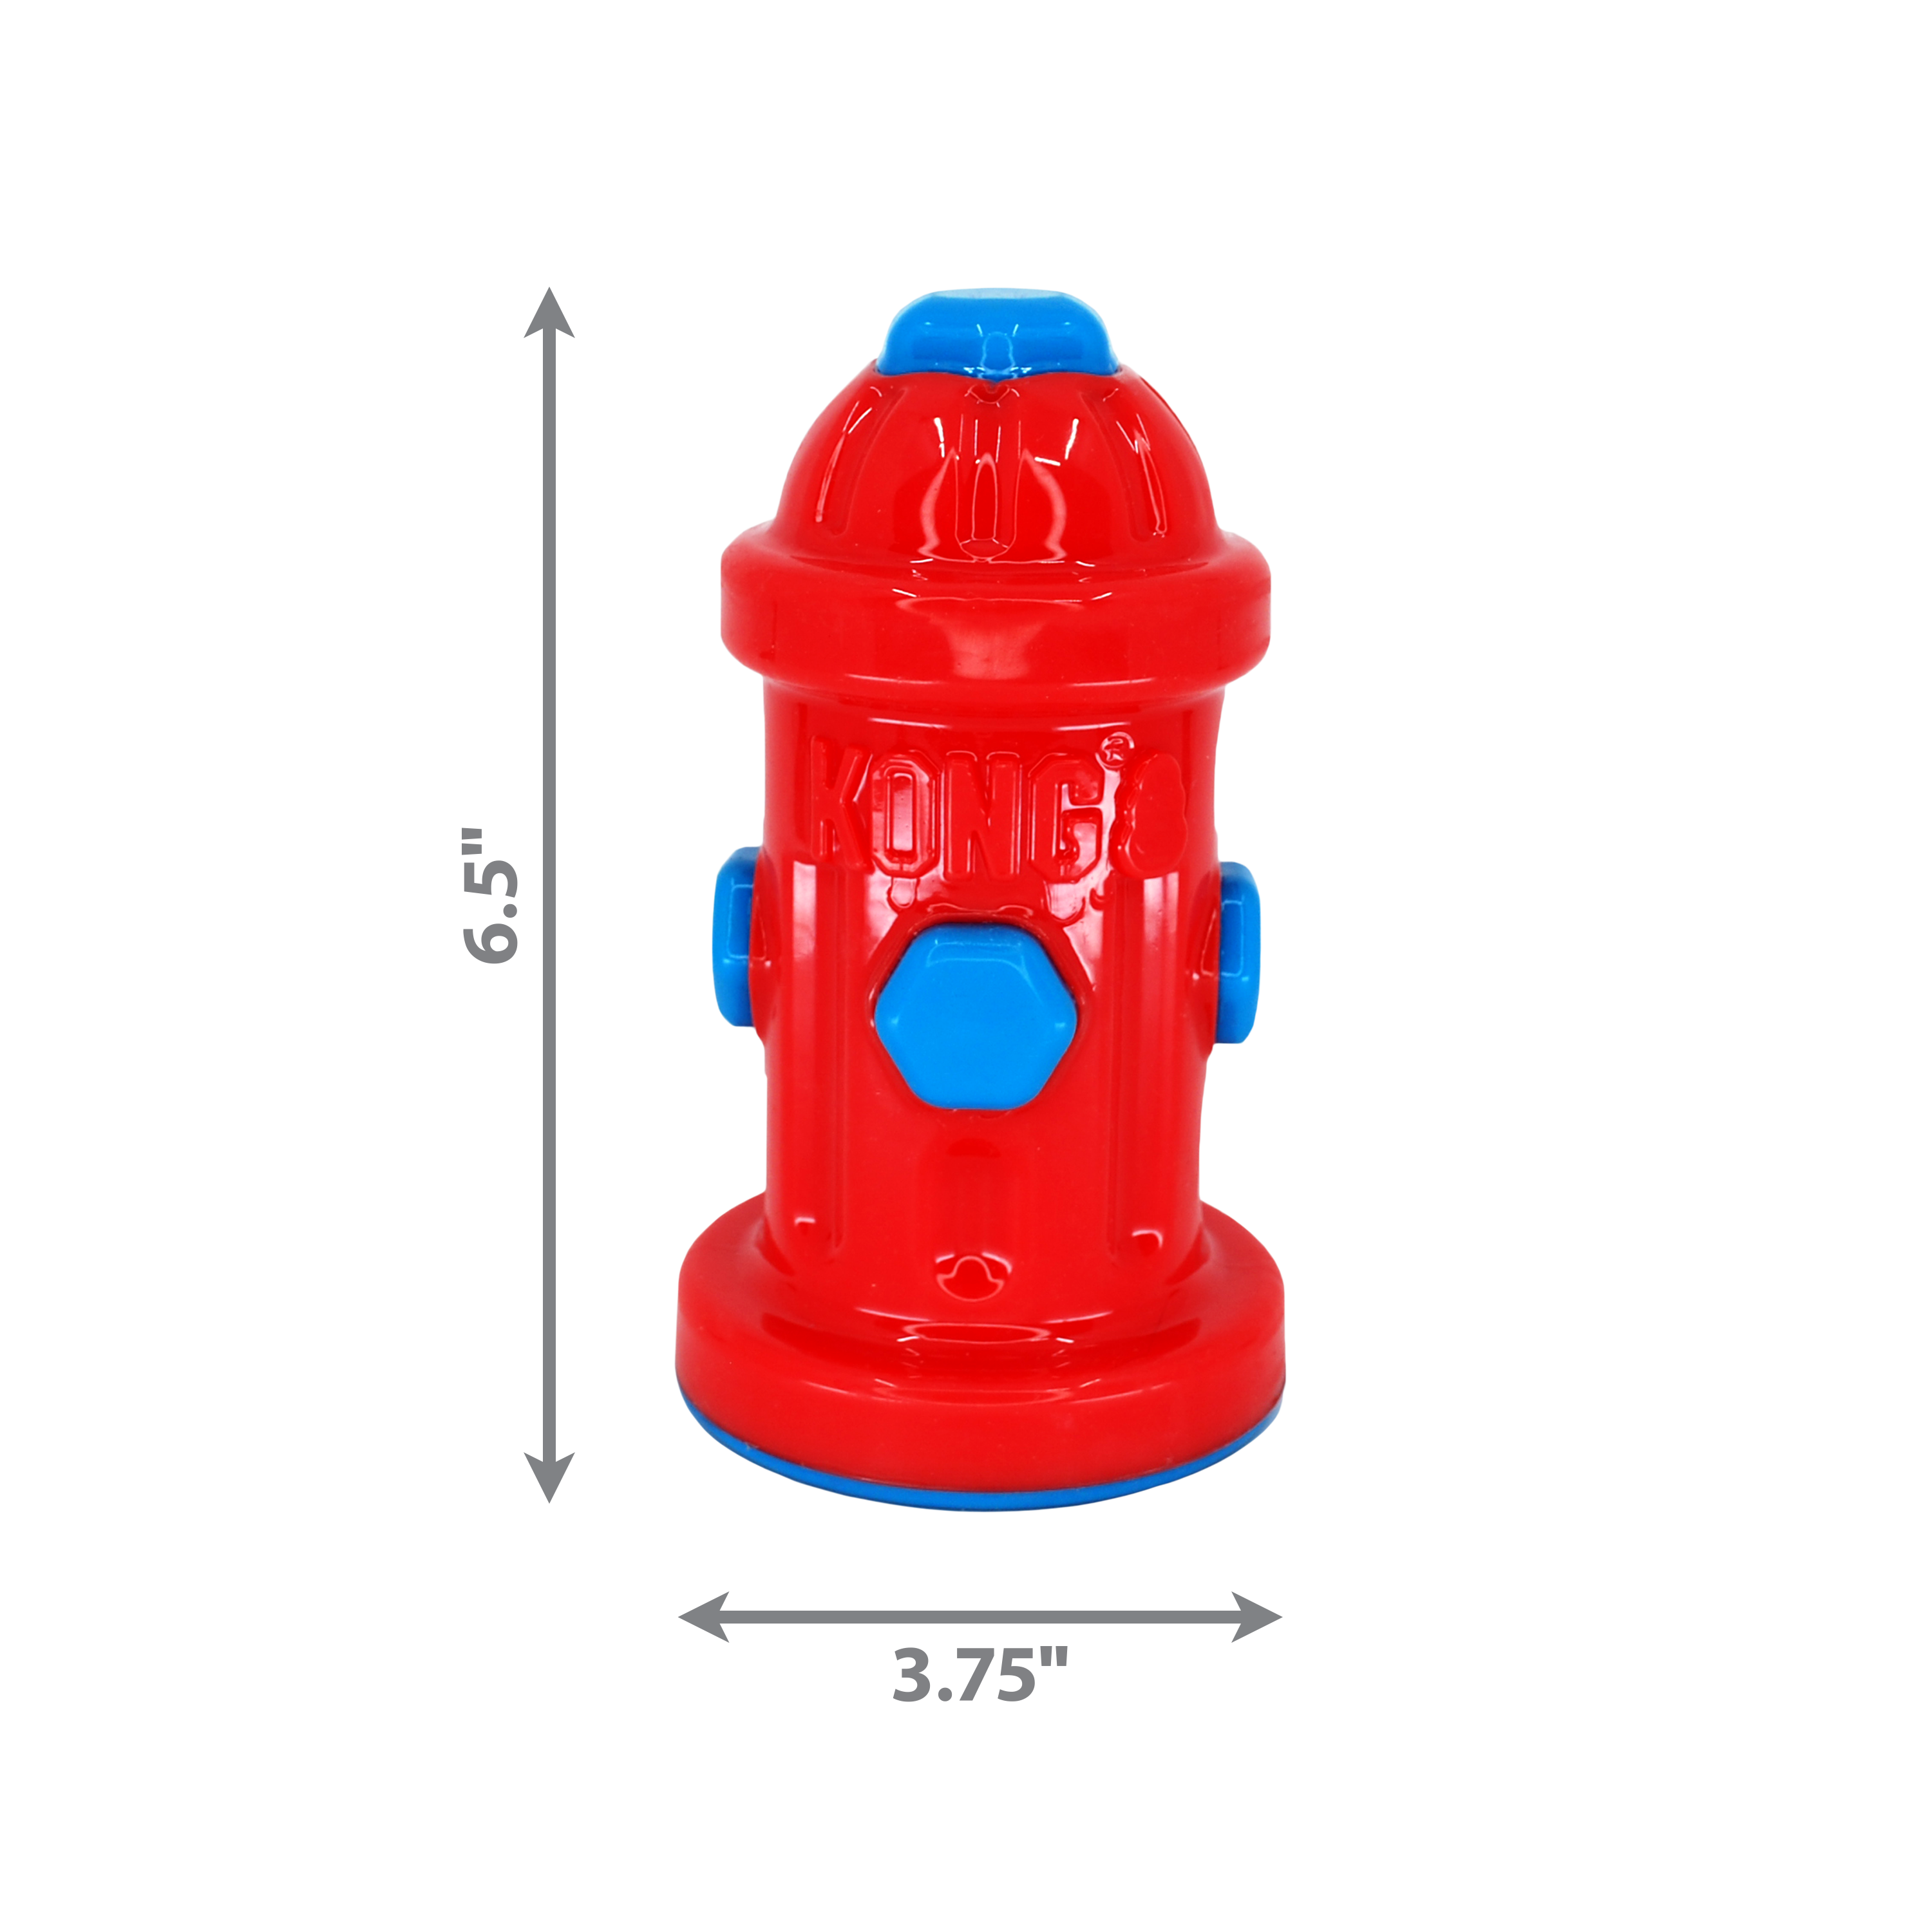 Immagine del prodotto Eon Fire Hydrant dimoffpack